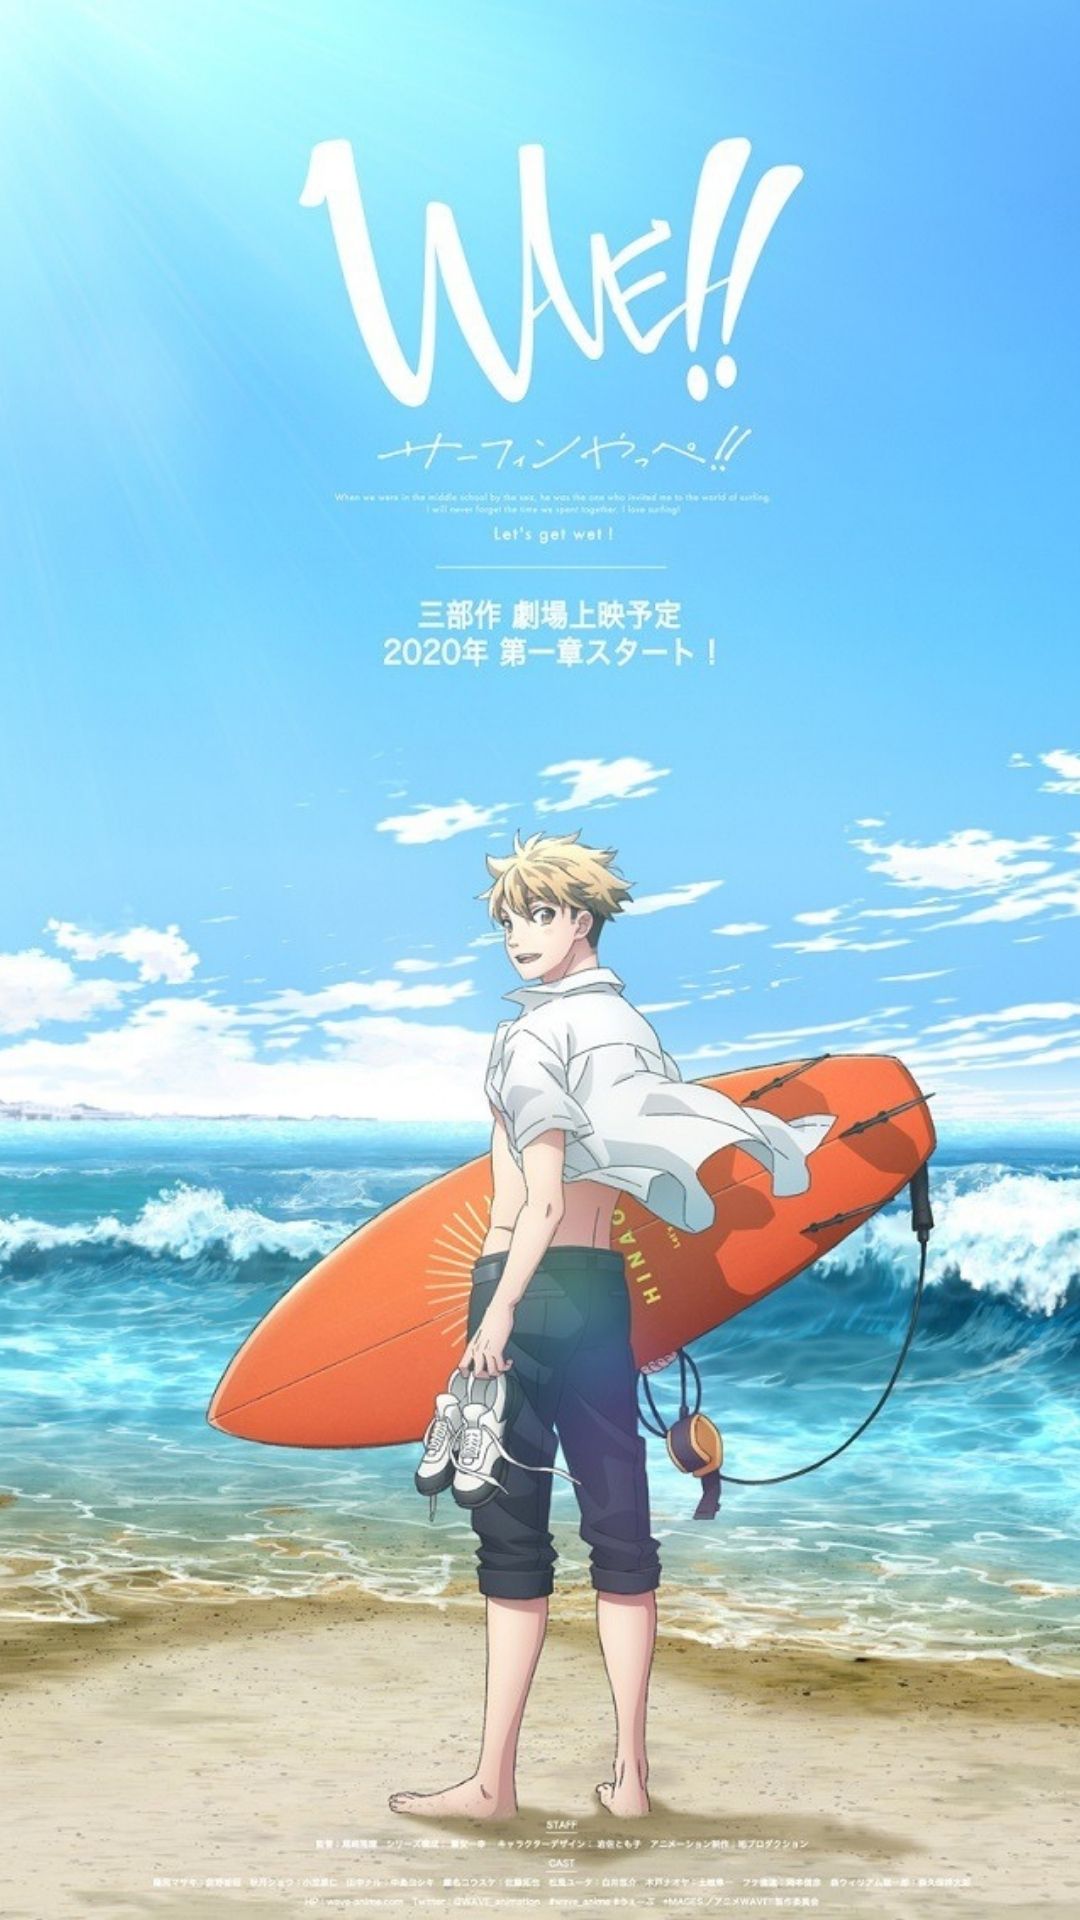 ¡¡Ola!! Surfeando Yappe !! Paseos en la nueva serie de anime en enero de 2021